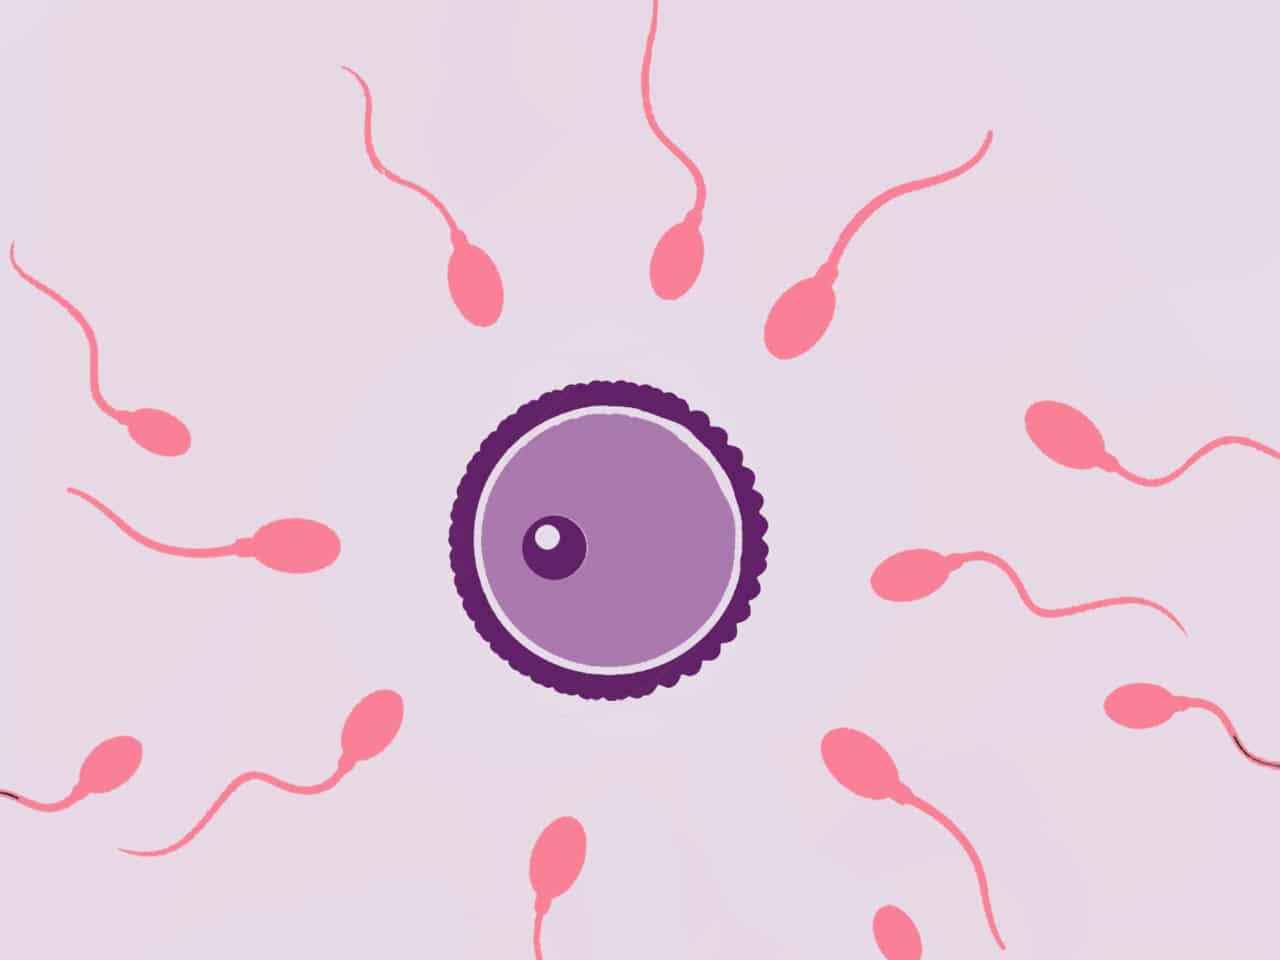 Das Spermium und die Spermienqualität können verbessert werden durch gesunde Ernährung bestehend aus Obst und Gemüse.